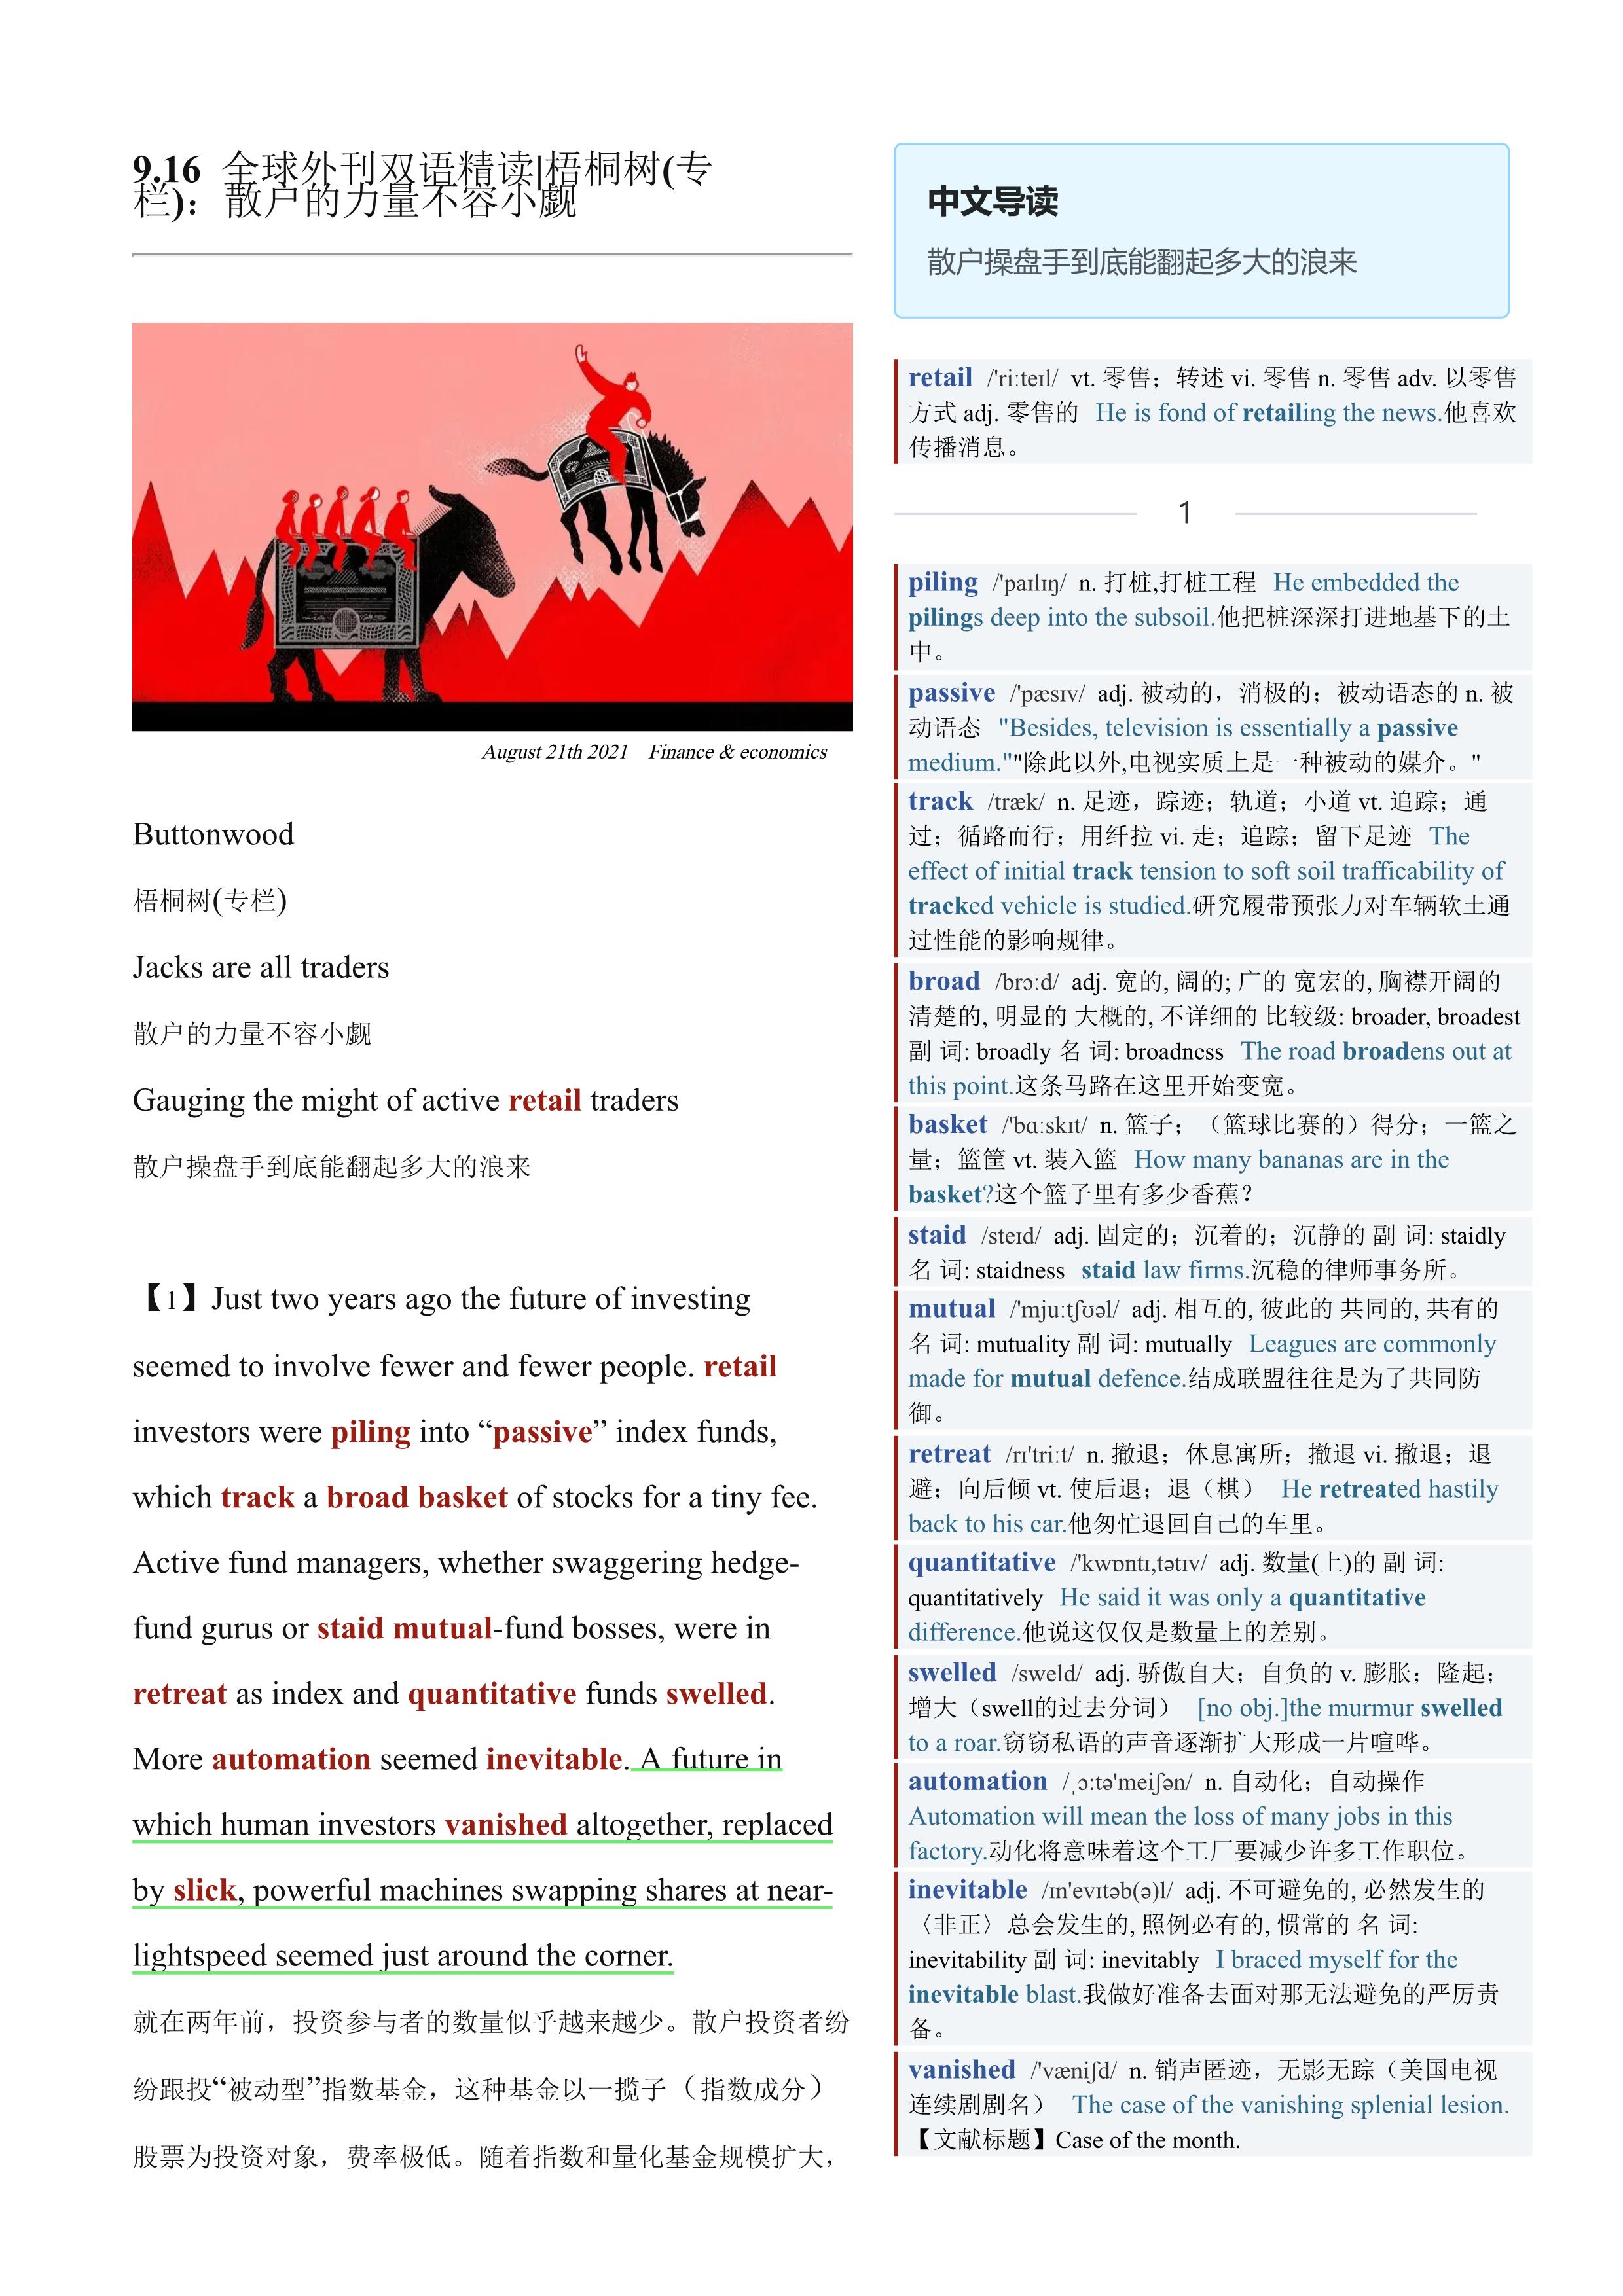 2021.09.16 经济学人双语精读丨梧桐树(专栏)：散户的力量不容小觑 (.PDF/DOC/MP3)